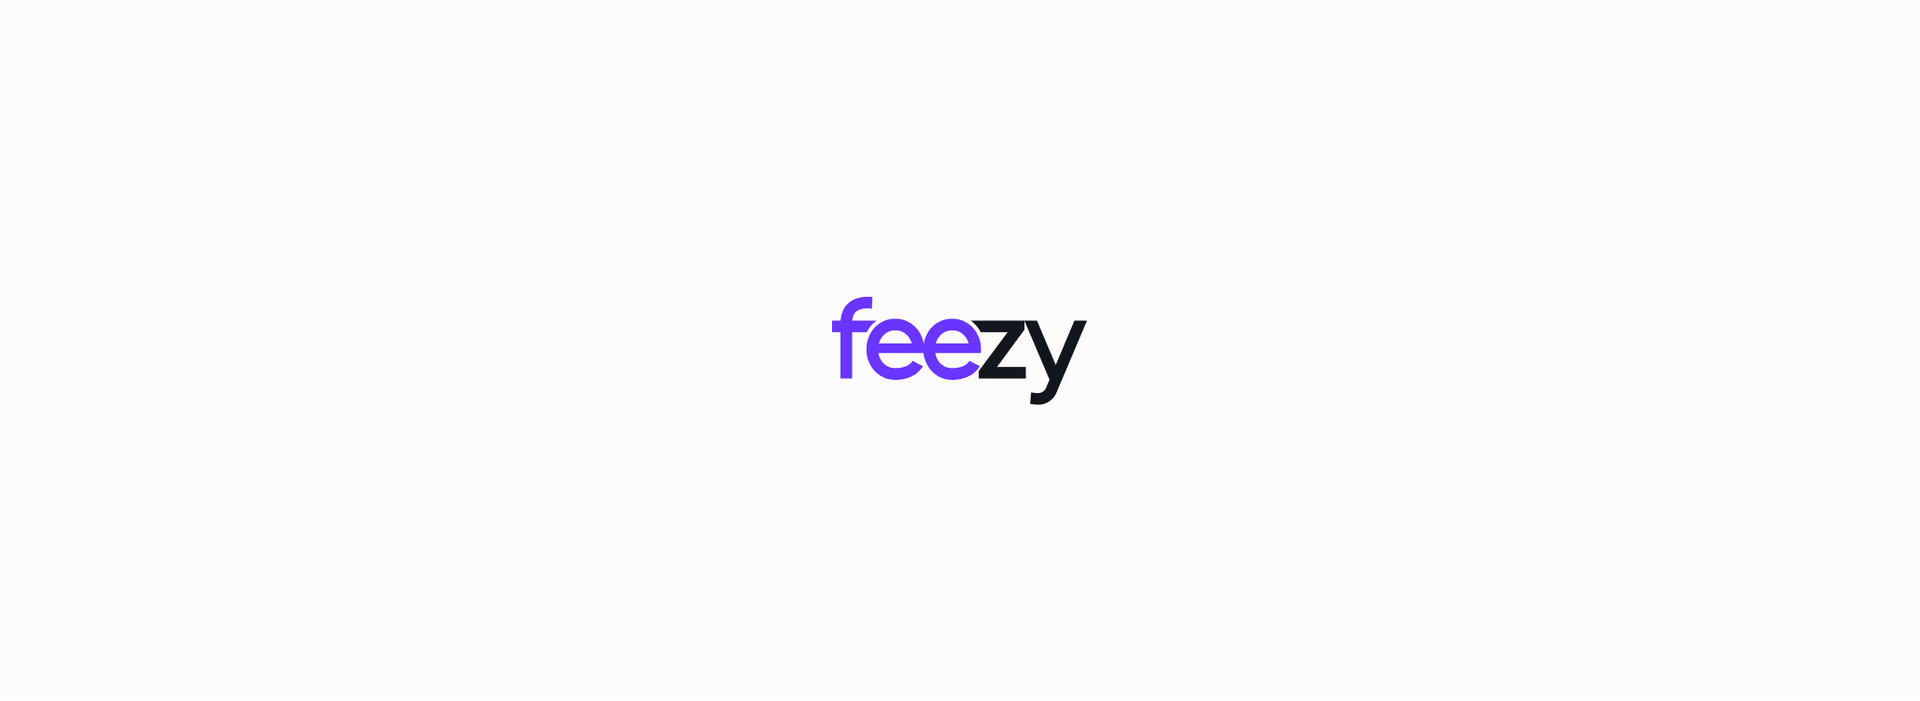 Feezy logo